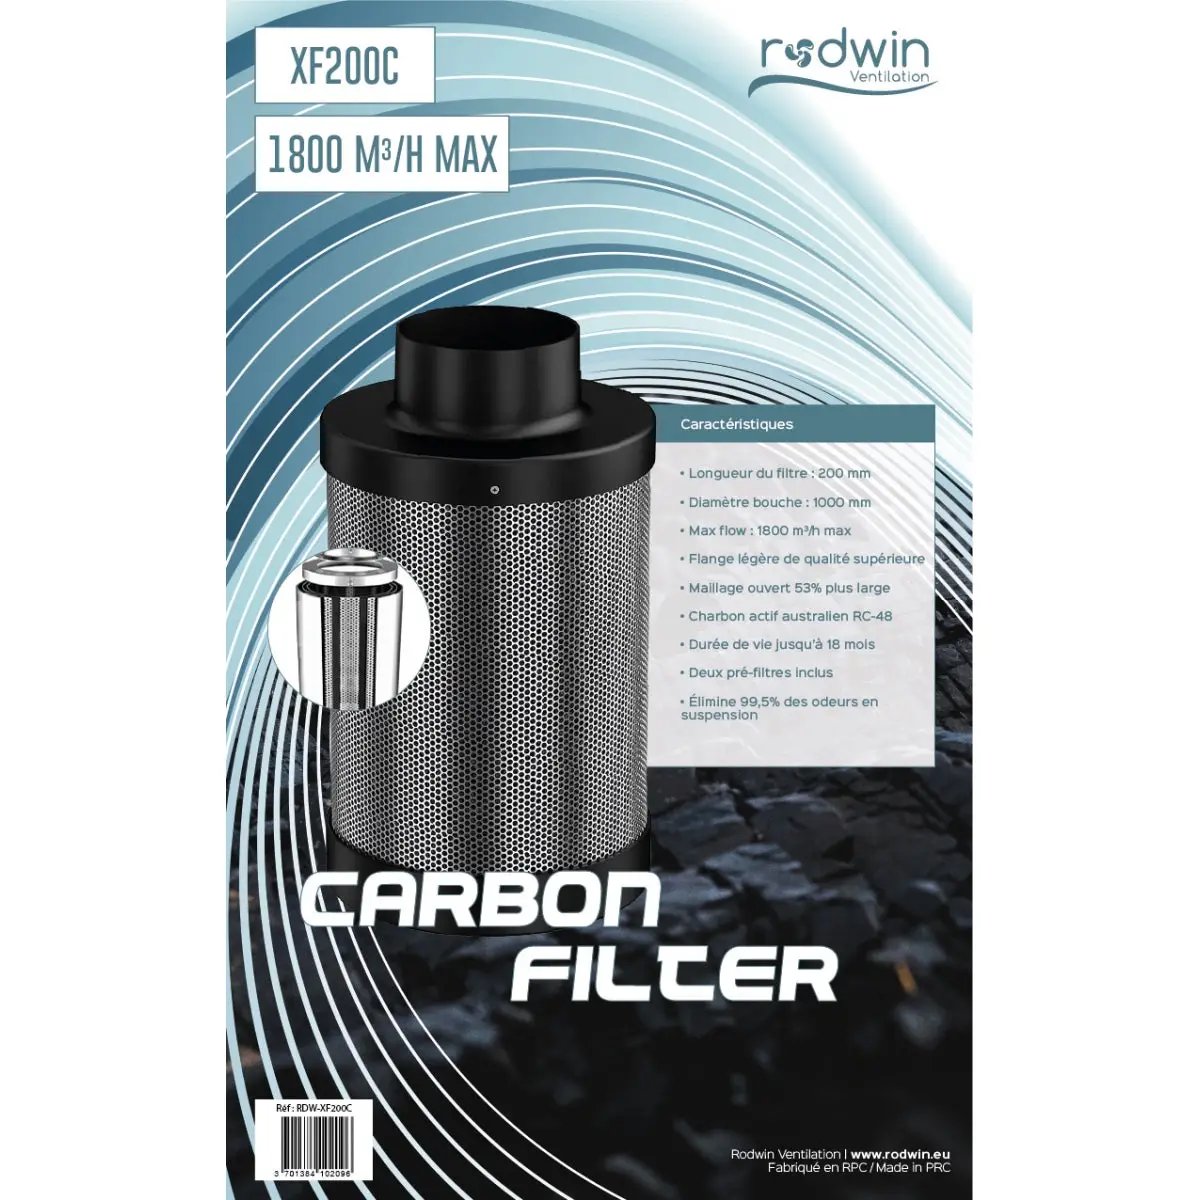 Filtre à charbon pour culture indoor Rodwin 200mm - 1800m3/h